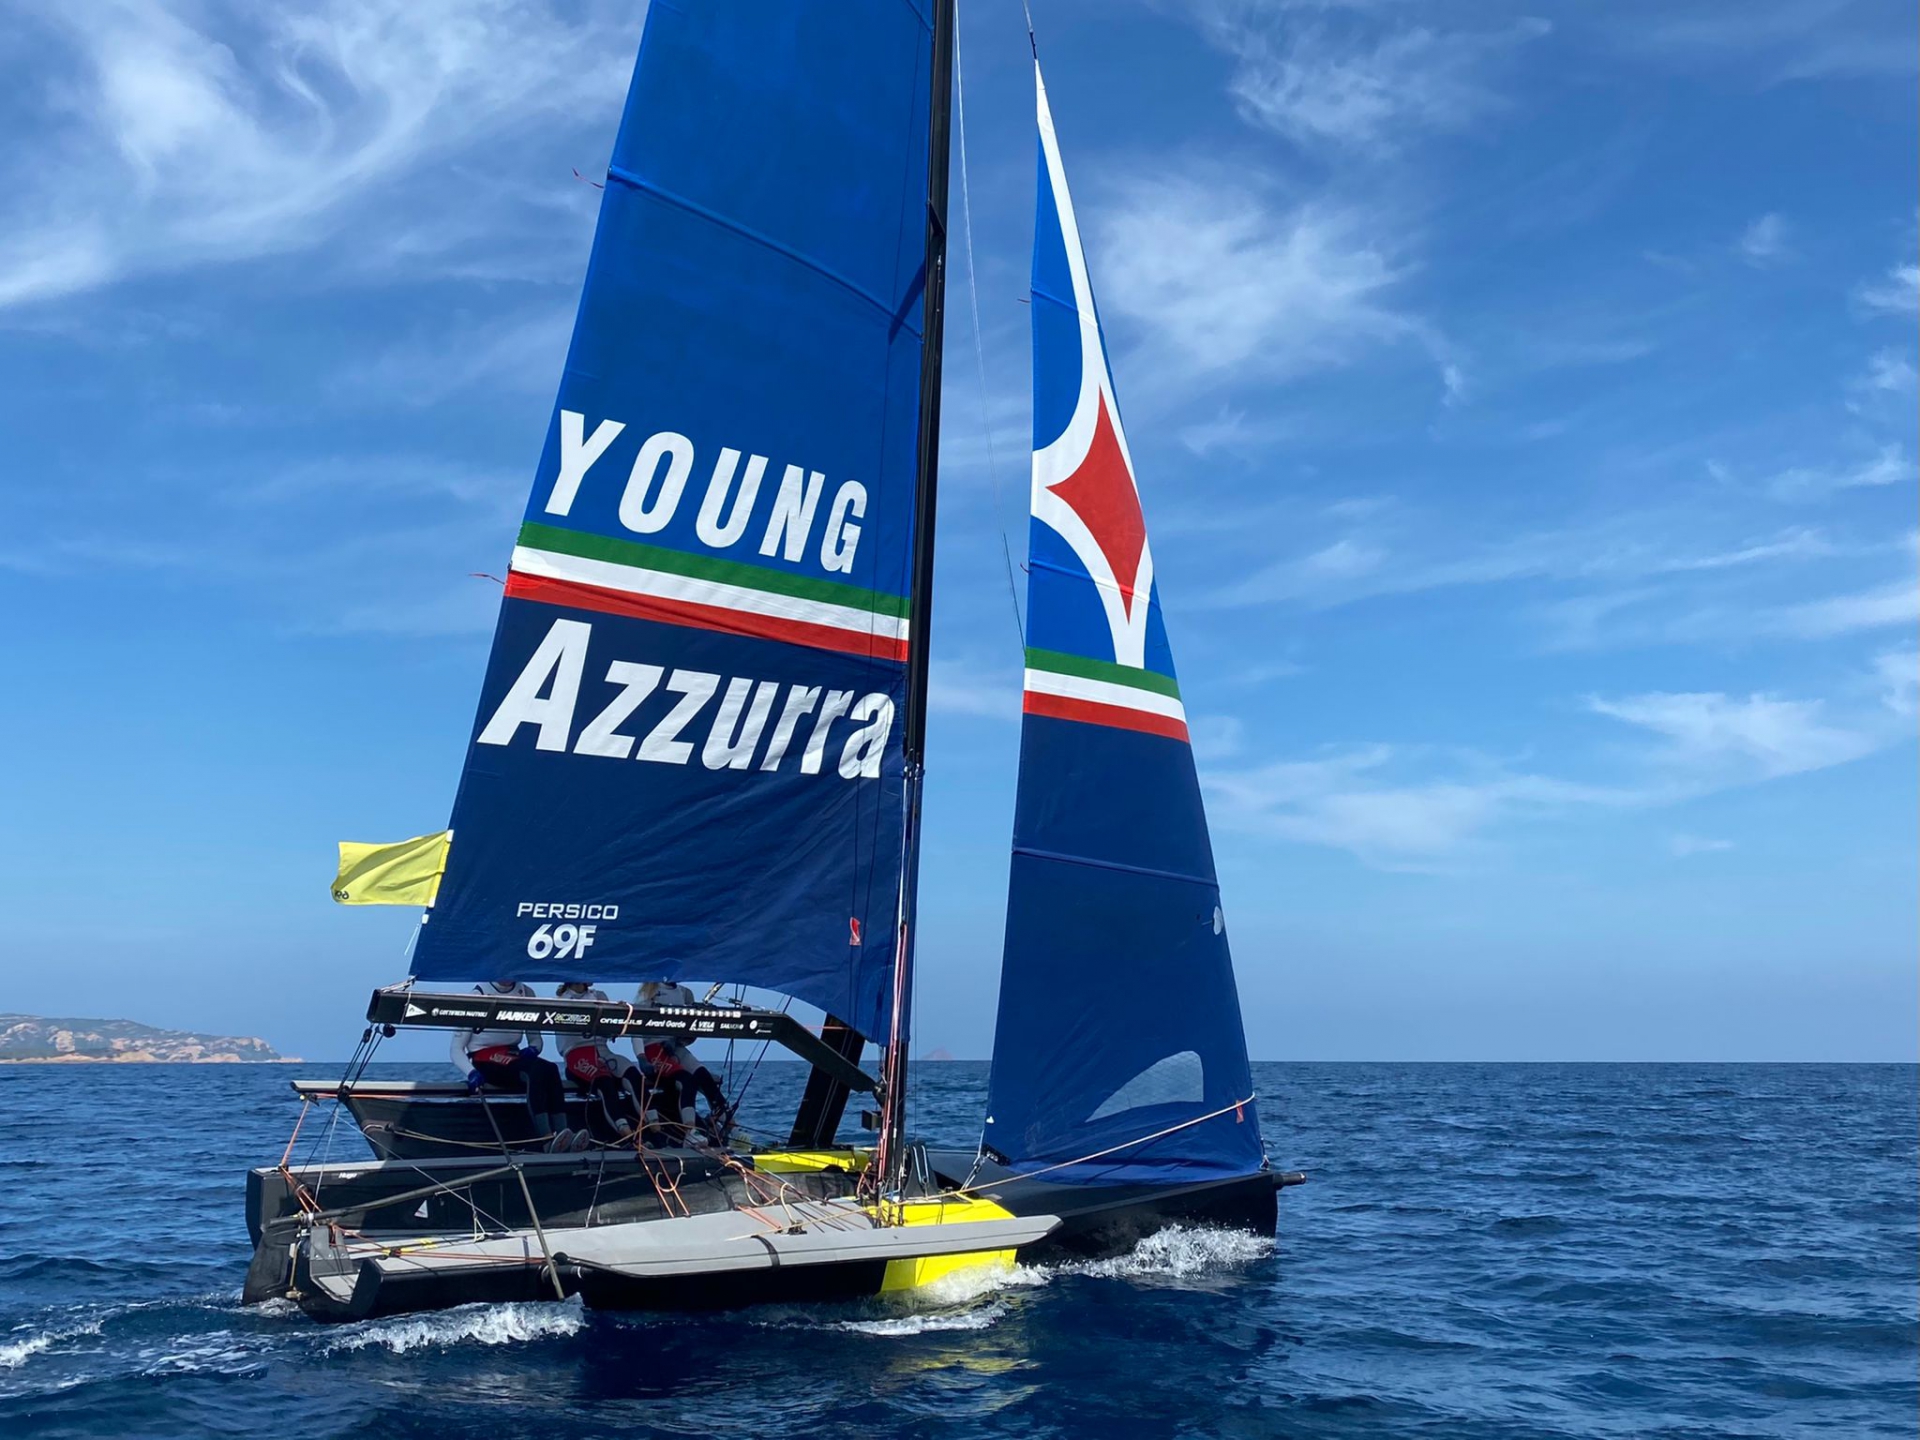 Nulla di fatto per la prima giornata del Grand Prix 4.1 Persico 69F Cup - MEMBER NEWS - Yacht Club Costa Smeralda